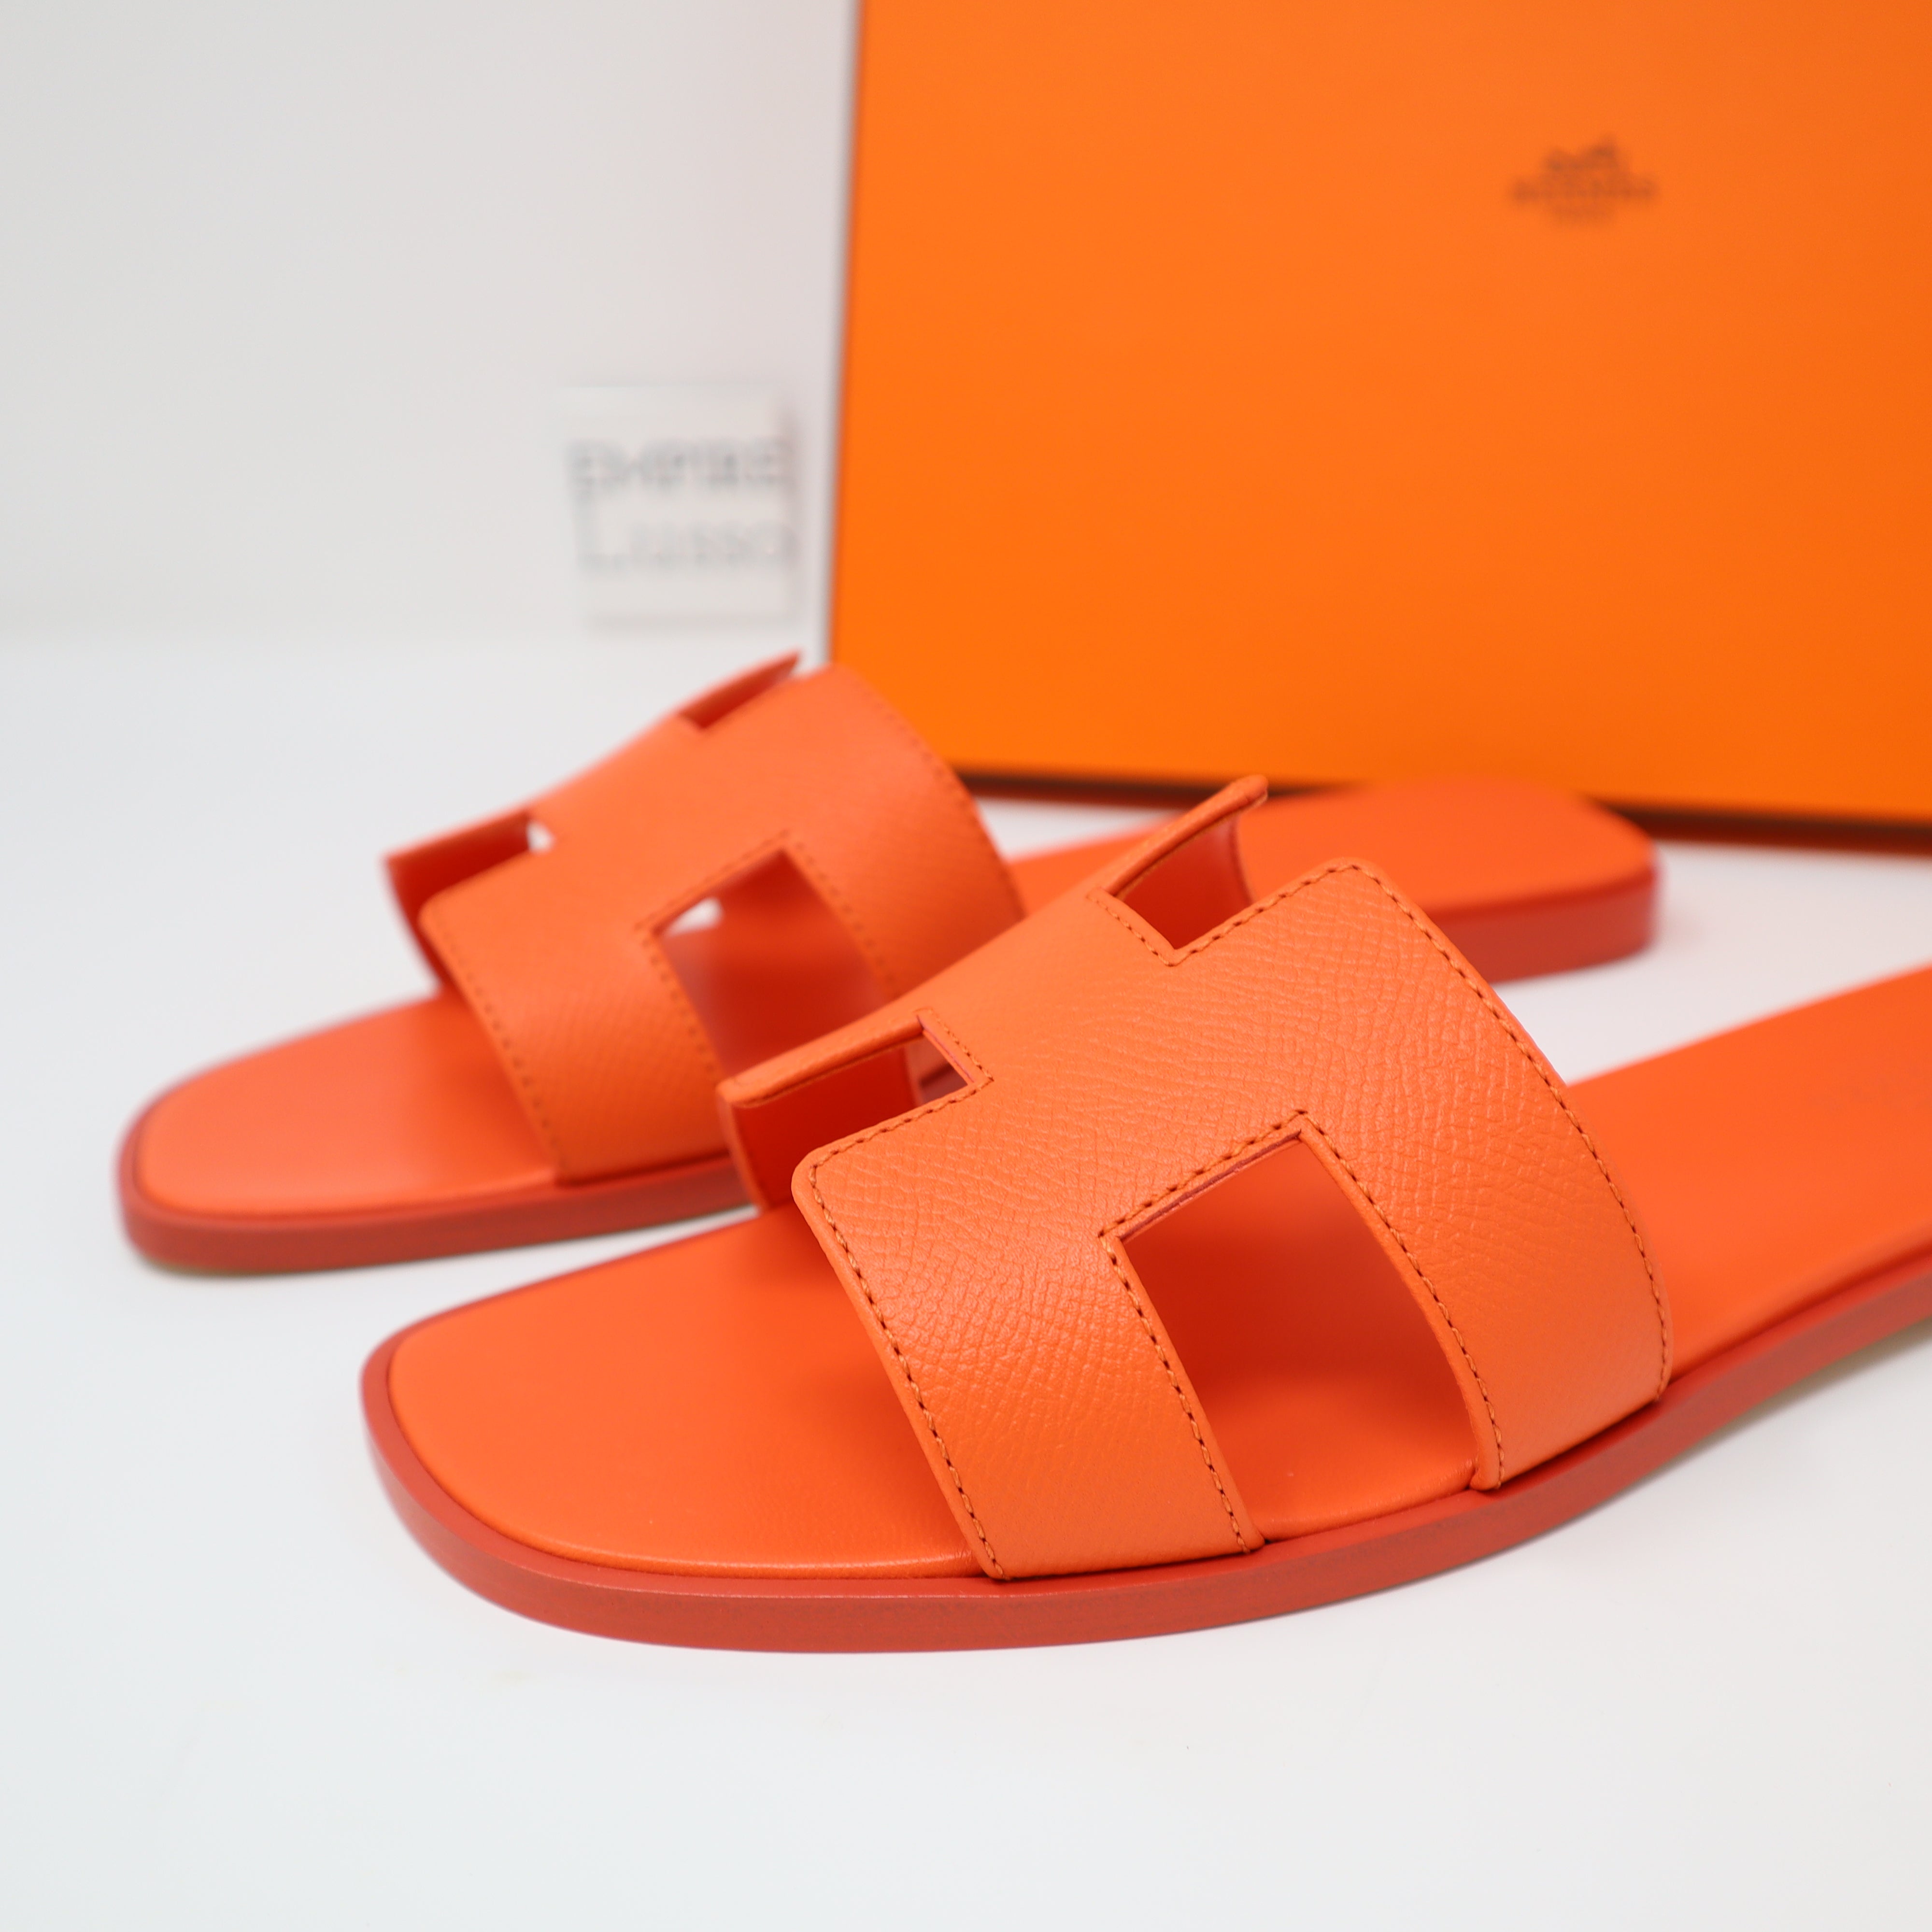 Hermès Oran sandal $1,800 Rose Jaipur Shiny Lizard US H212179Z 2L360  #hermesnewin #hermesoran #hermesoransandals